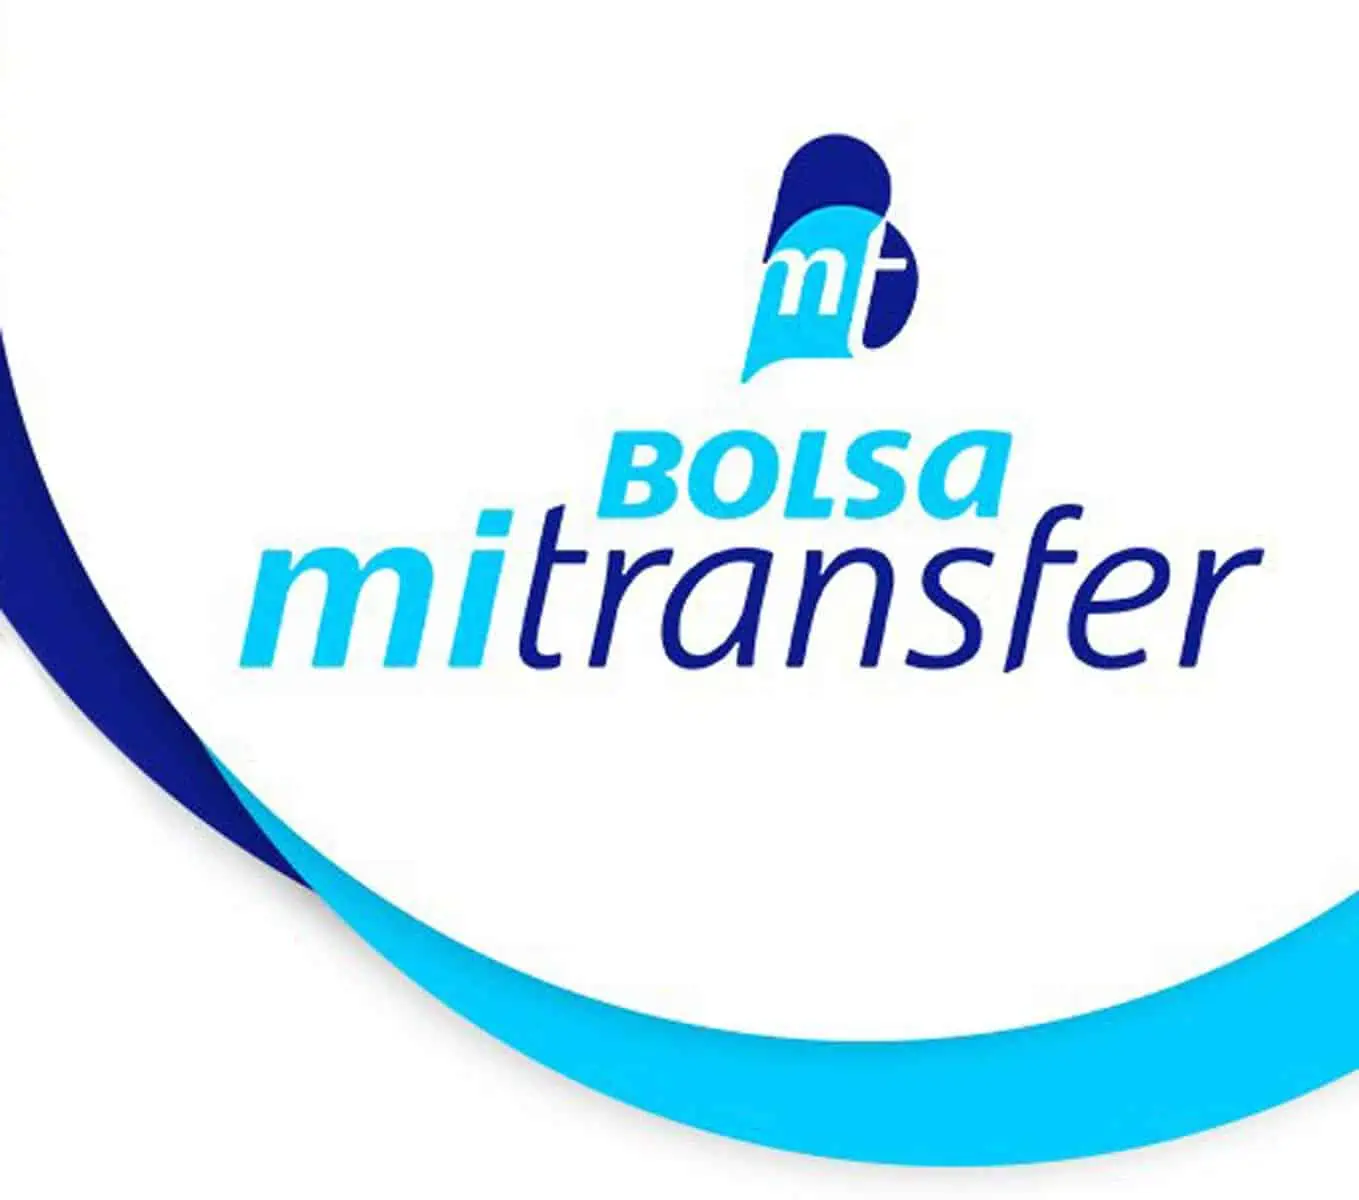 Bolsa MiTransfer Prevé Incorporar Nuevas Funcionalidades